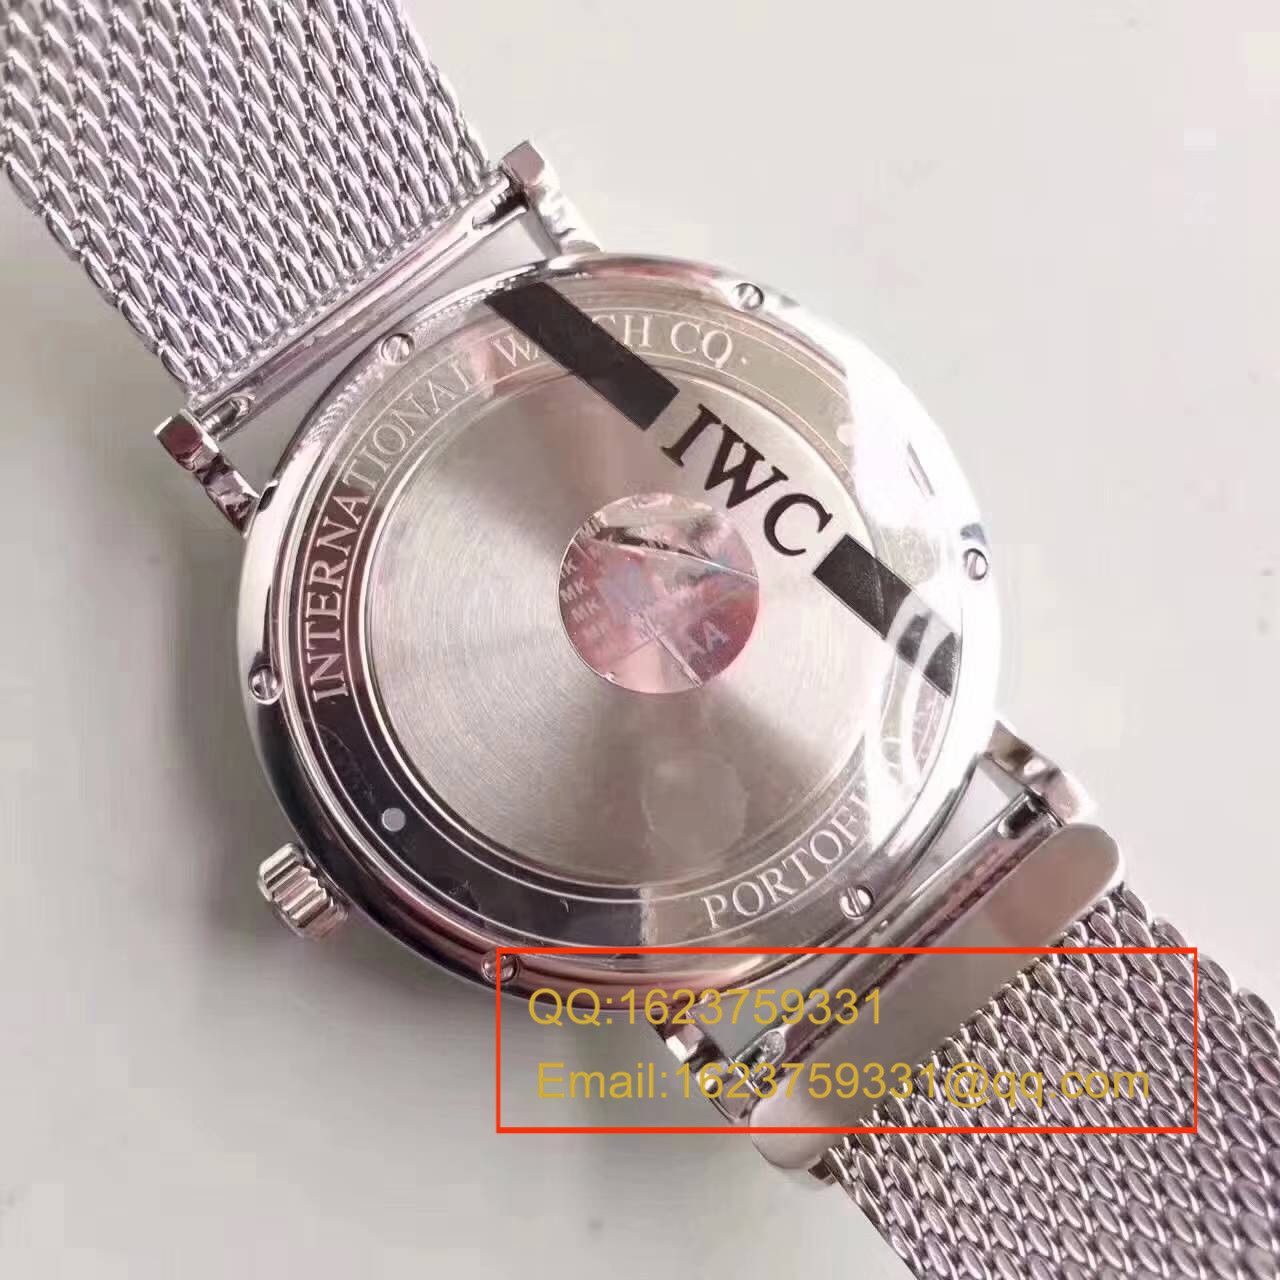 【独家视频测评MK厂1:1超A高仿手表】万国柏涛菲诺系列IW356506精钢米兰表带腕表 